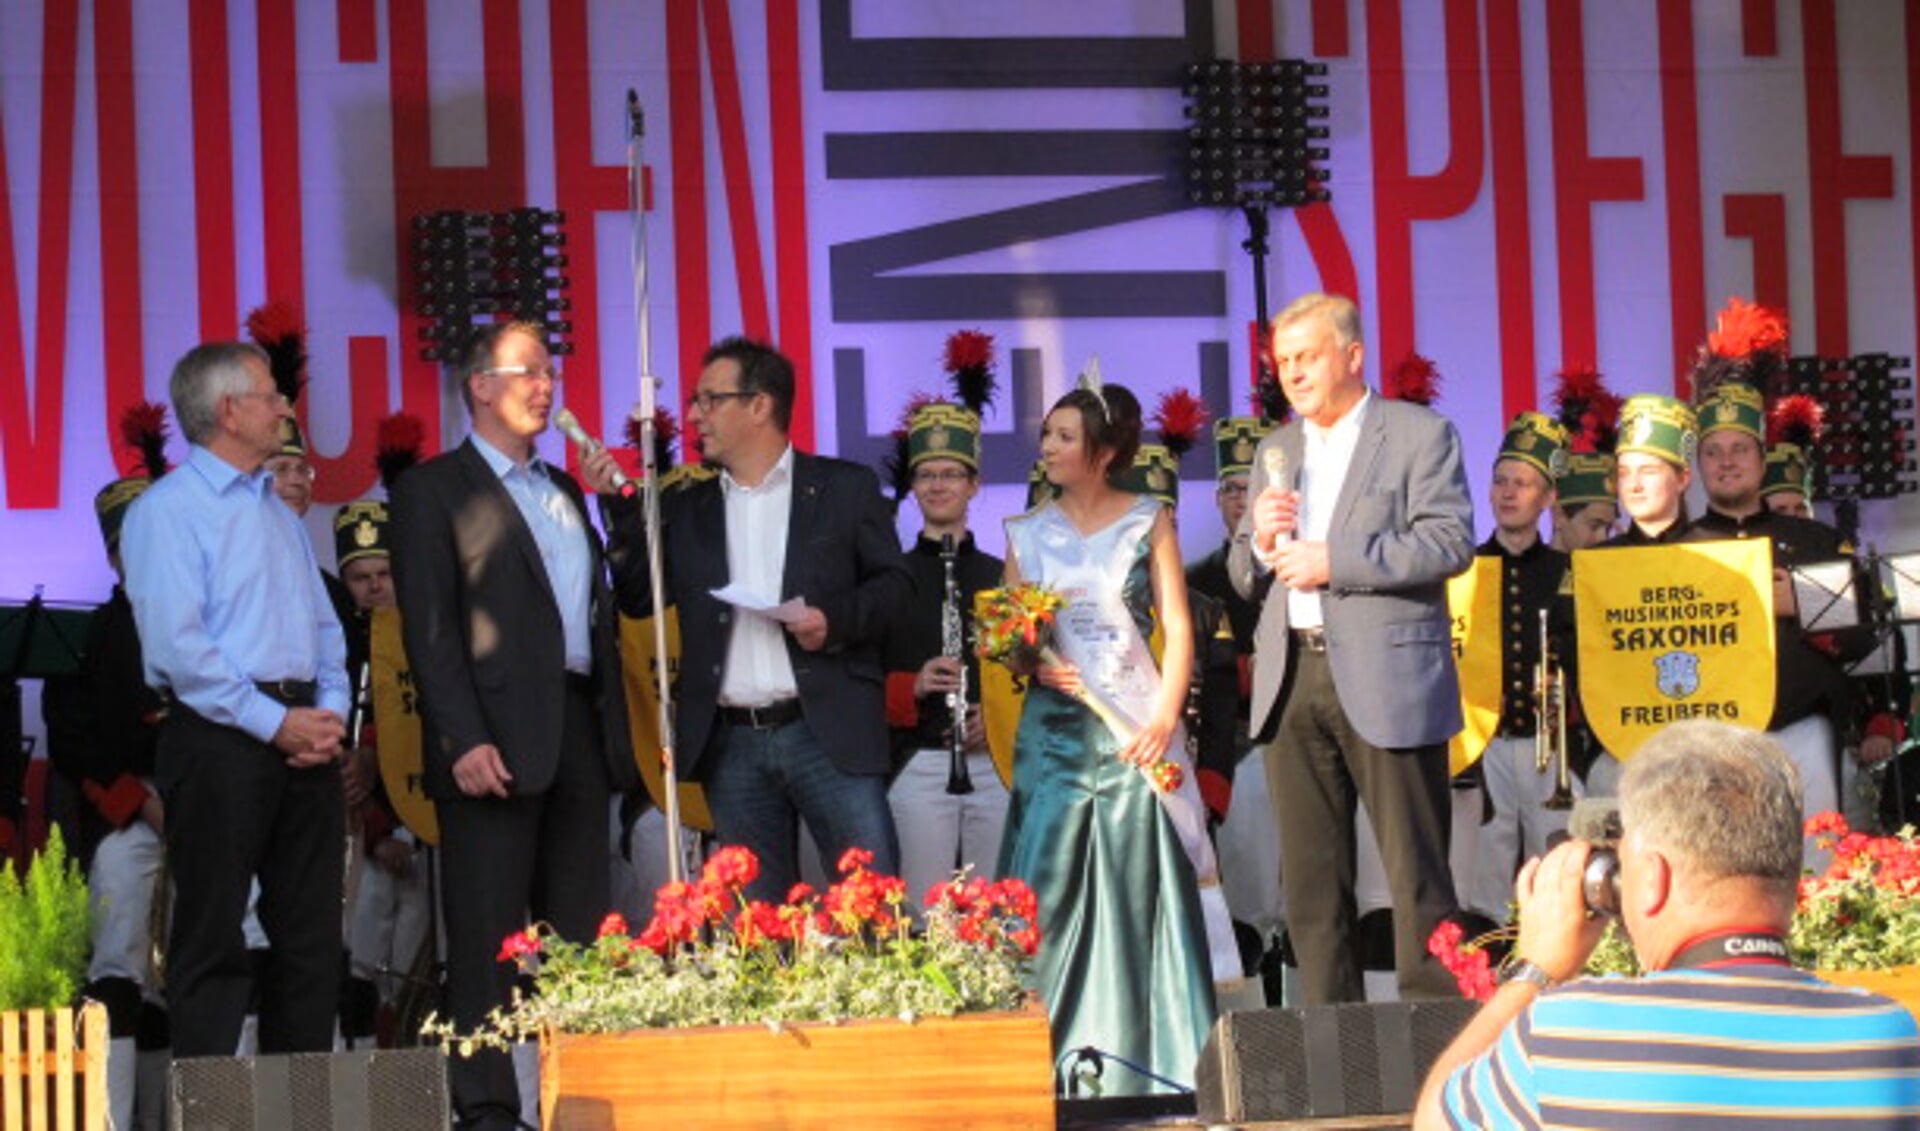 Het Bergstadtfest is het jaarlijkse hoogtepunt in Freiberg en ook dit jaar zal weer een groep Delftenaren tijdens dit feest van de partij zijn. 